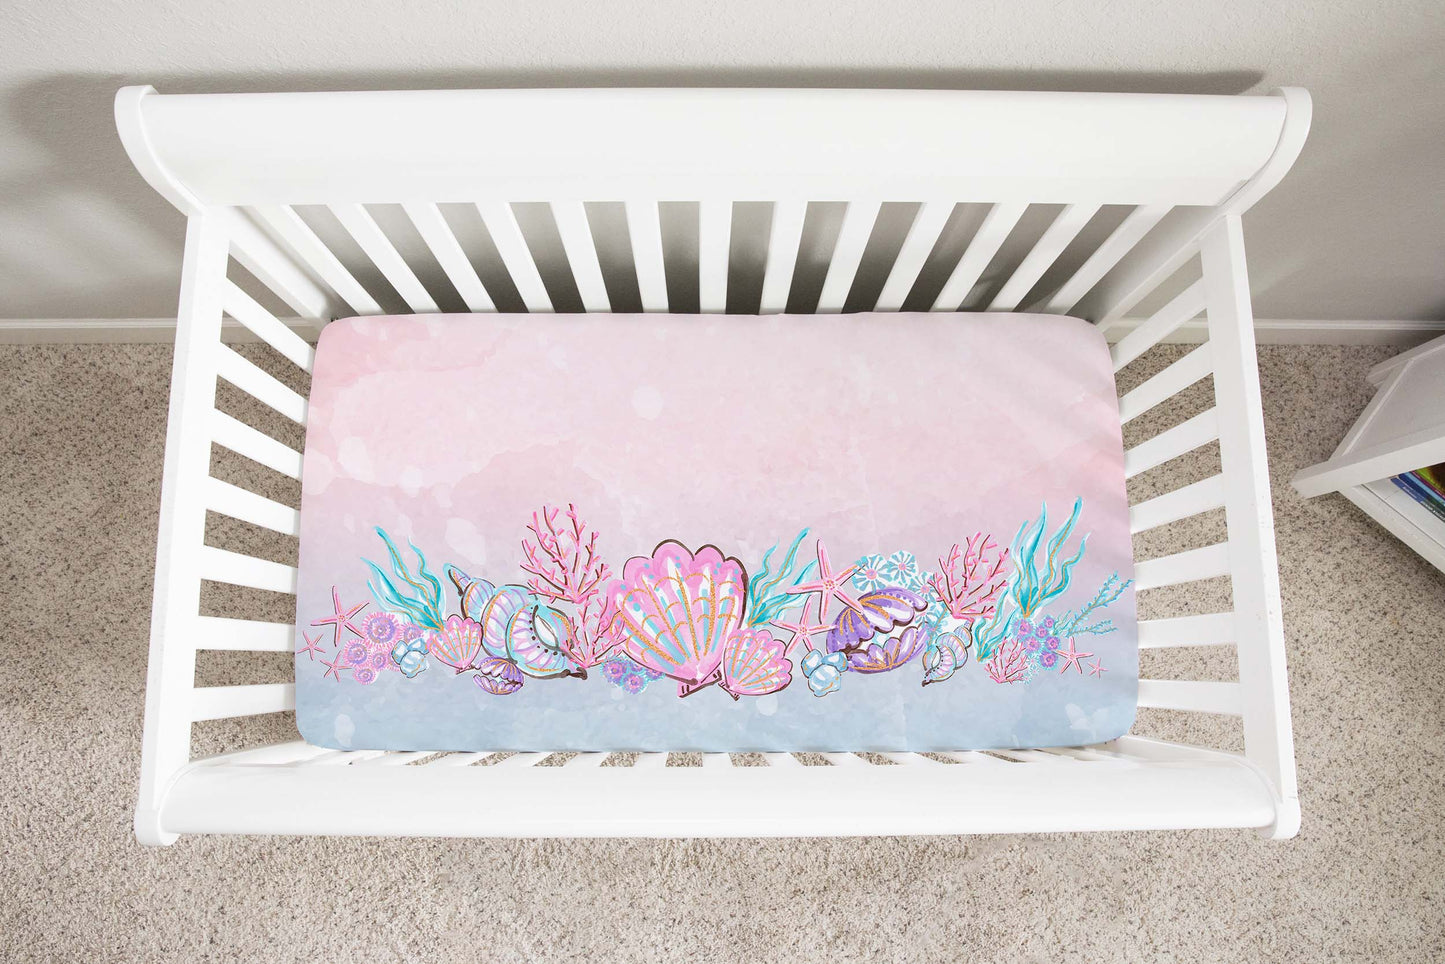 Mermaid crib sheet, Under the sea nursery bedding - Pink Mermaid